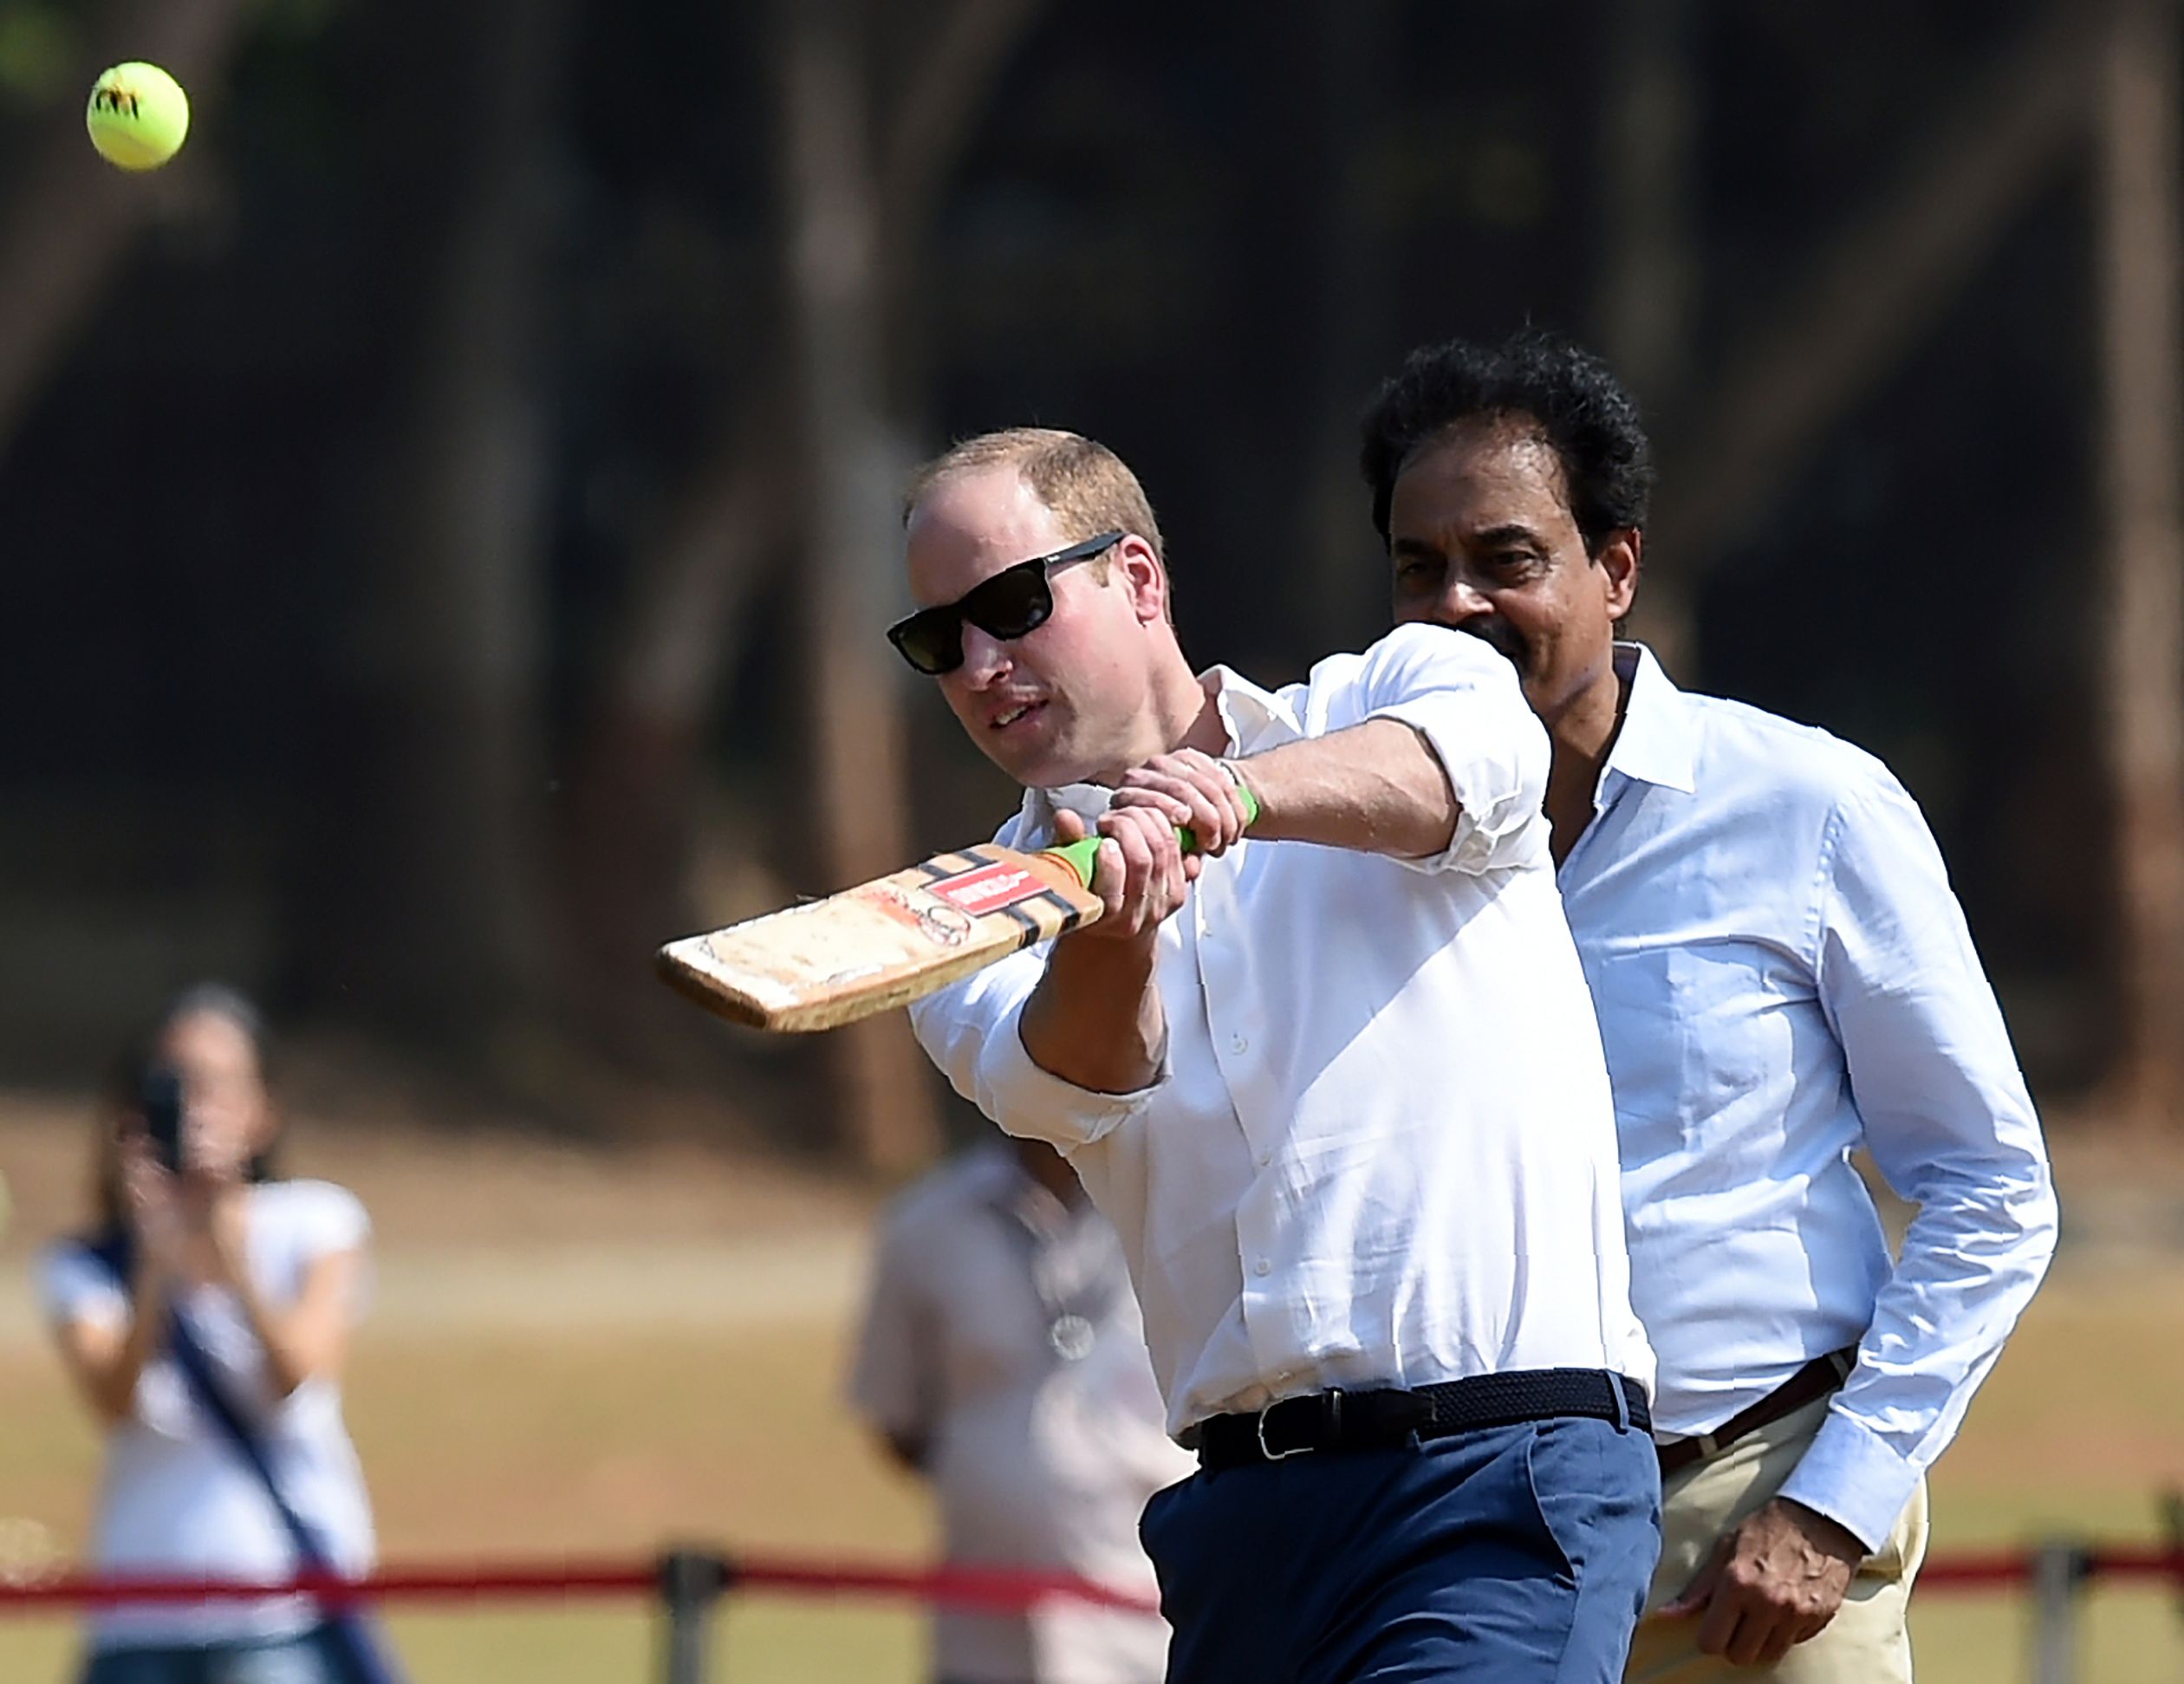 2016: Prins William speelt cricket in India, de sport is daar razend populair.